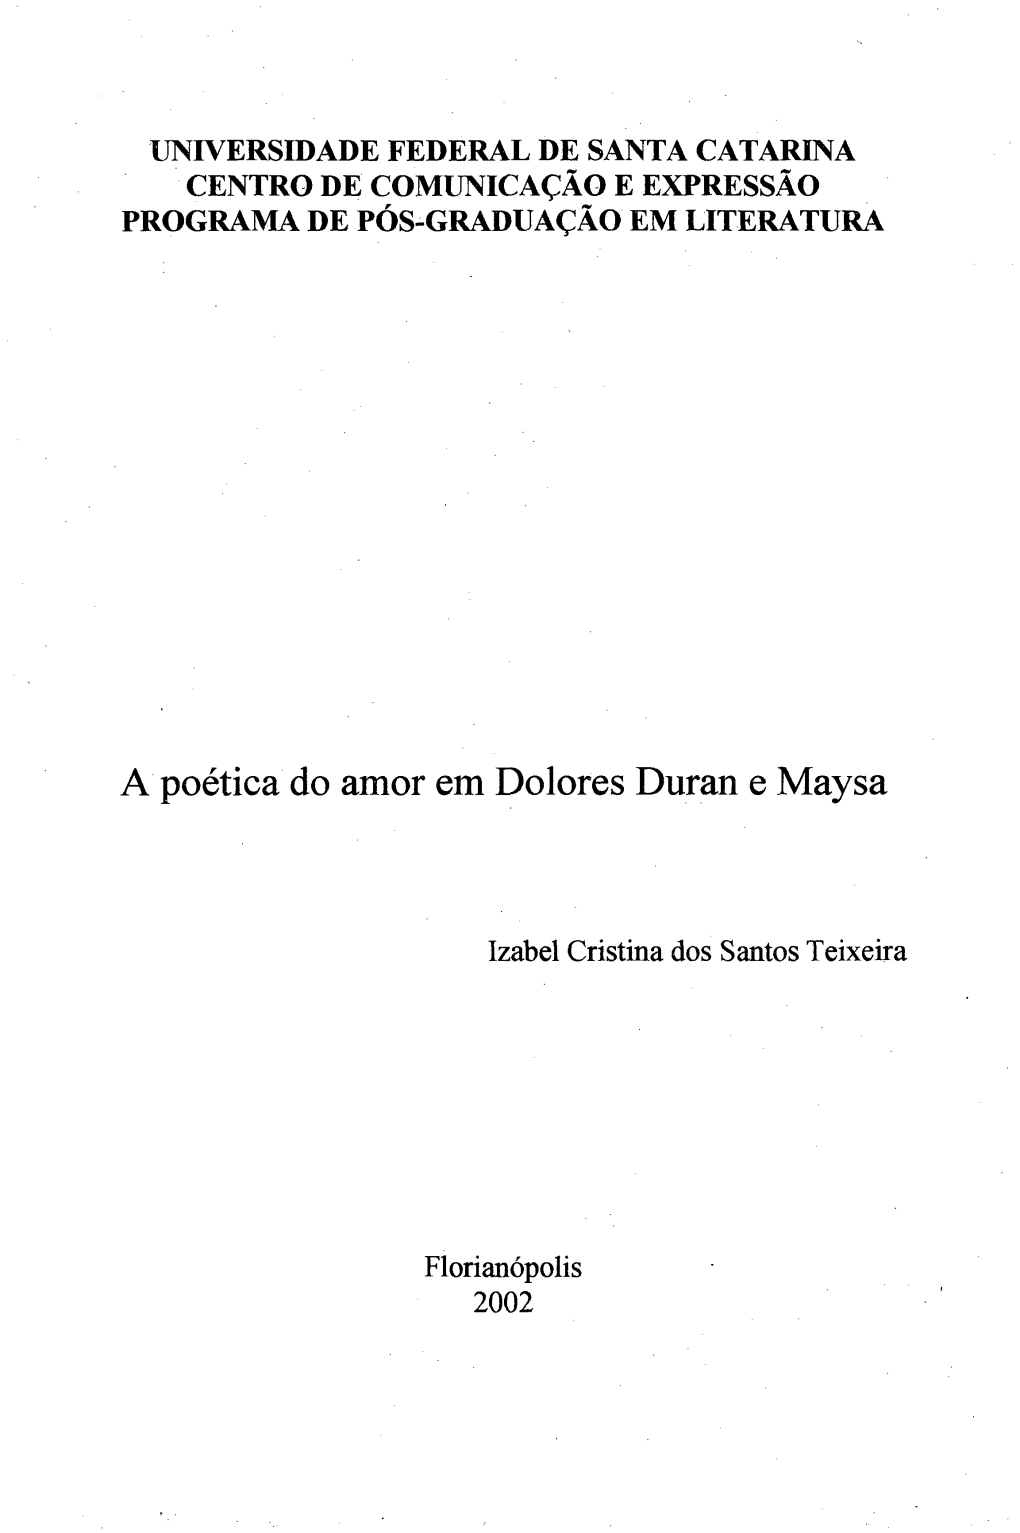 A Poética Do Amor Em Dolores Duran E Maysa